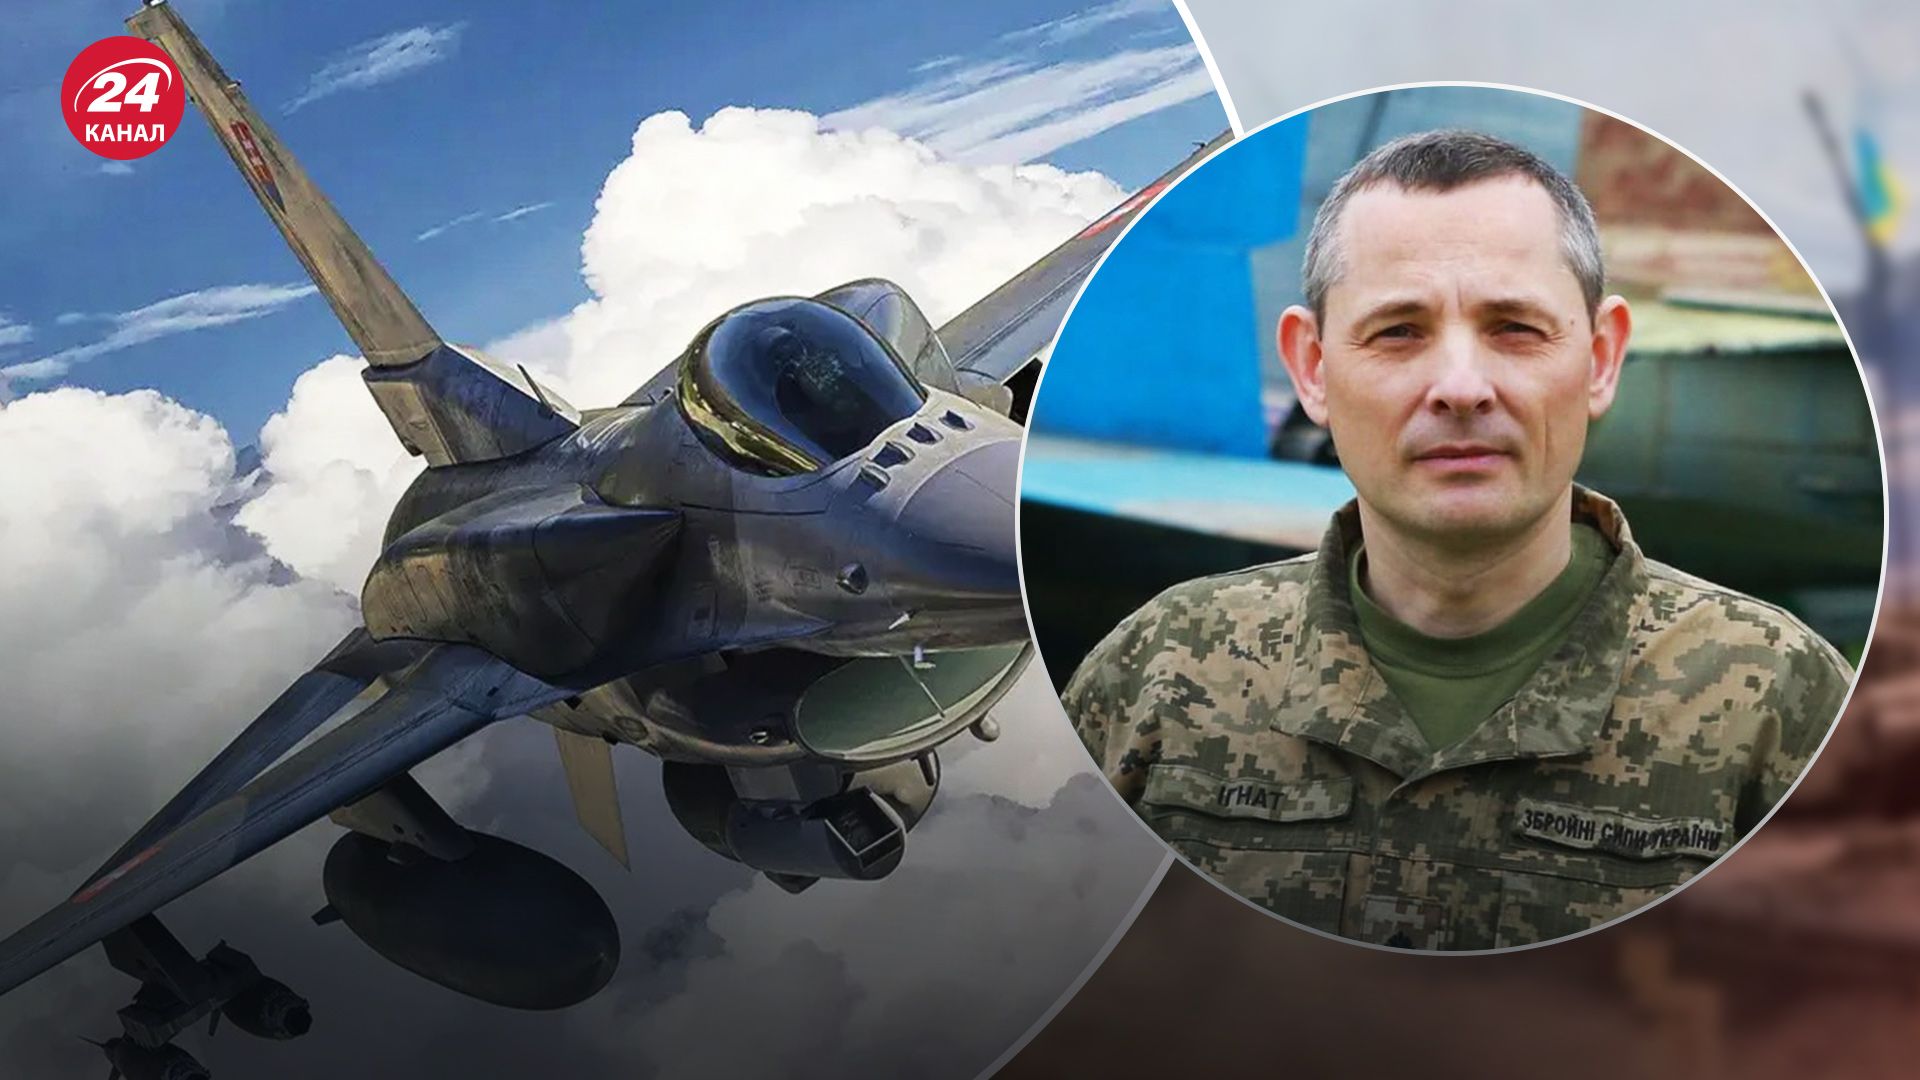 Юрій Ігнат повідомив, що українські пілоти швидко опанують літаки F-16